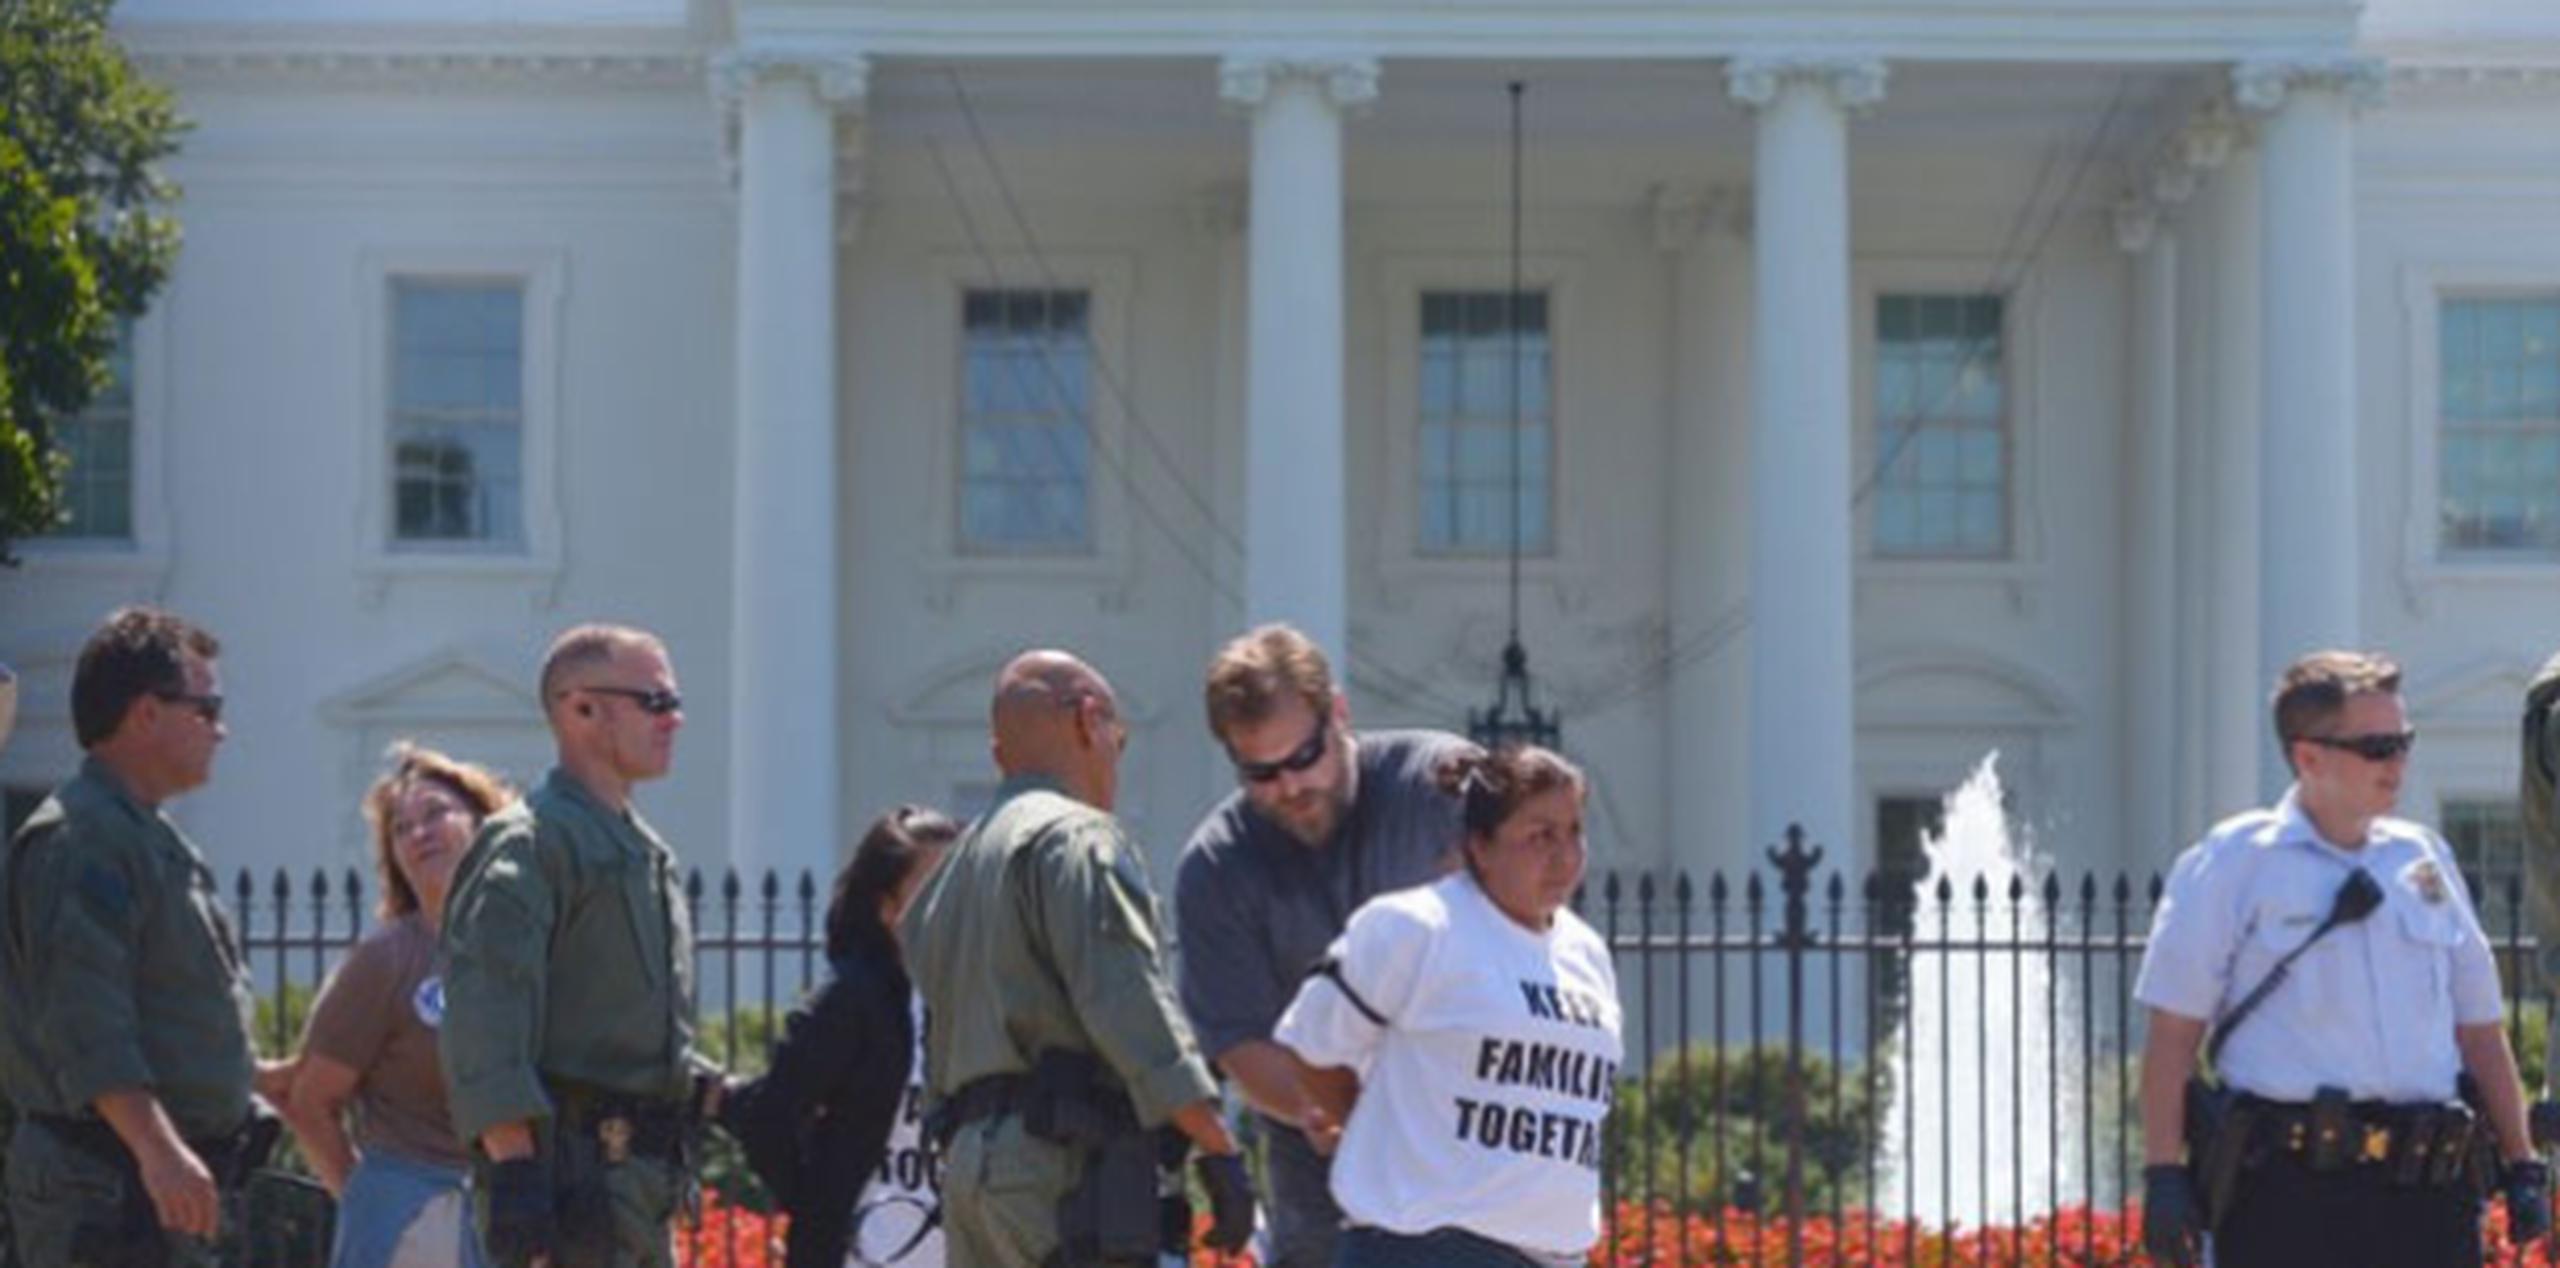 El pasado 28 de agosto la policía arrestó a defensores de los derechos de los inmigrantes quienes se negaron a retirarse de la parte de al frente de la Casa Blanca. (Archivo/AFP/Mandel Ngan)